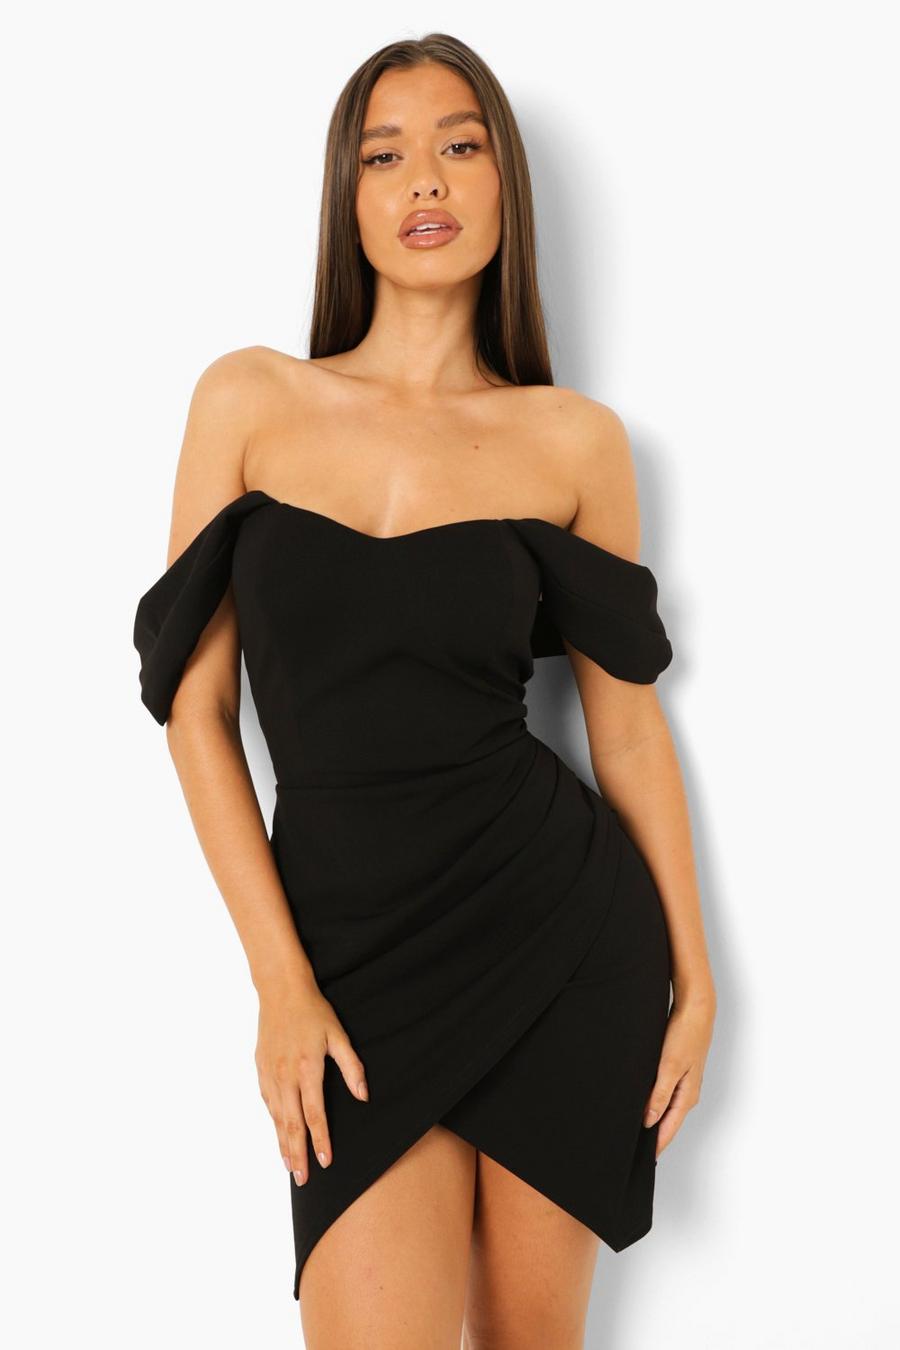 שחור black שמלת מיני צמודה עם חצאית מעטפת ומחוך